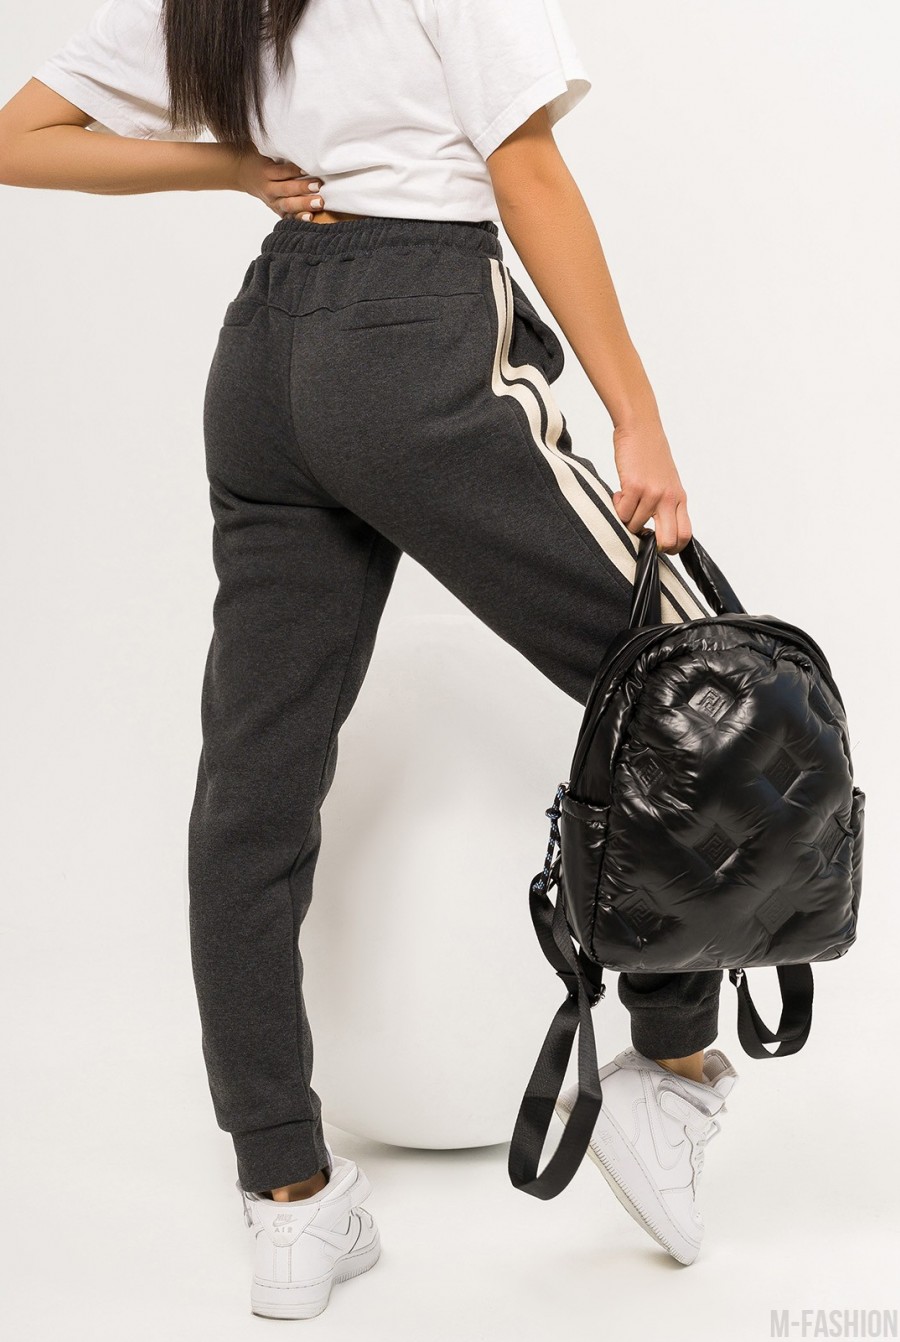 Черный болоньевый объемный рюкзак- Фото 2